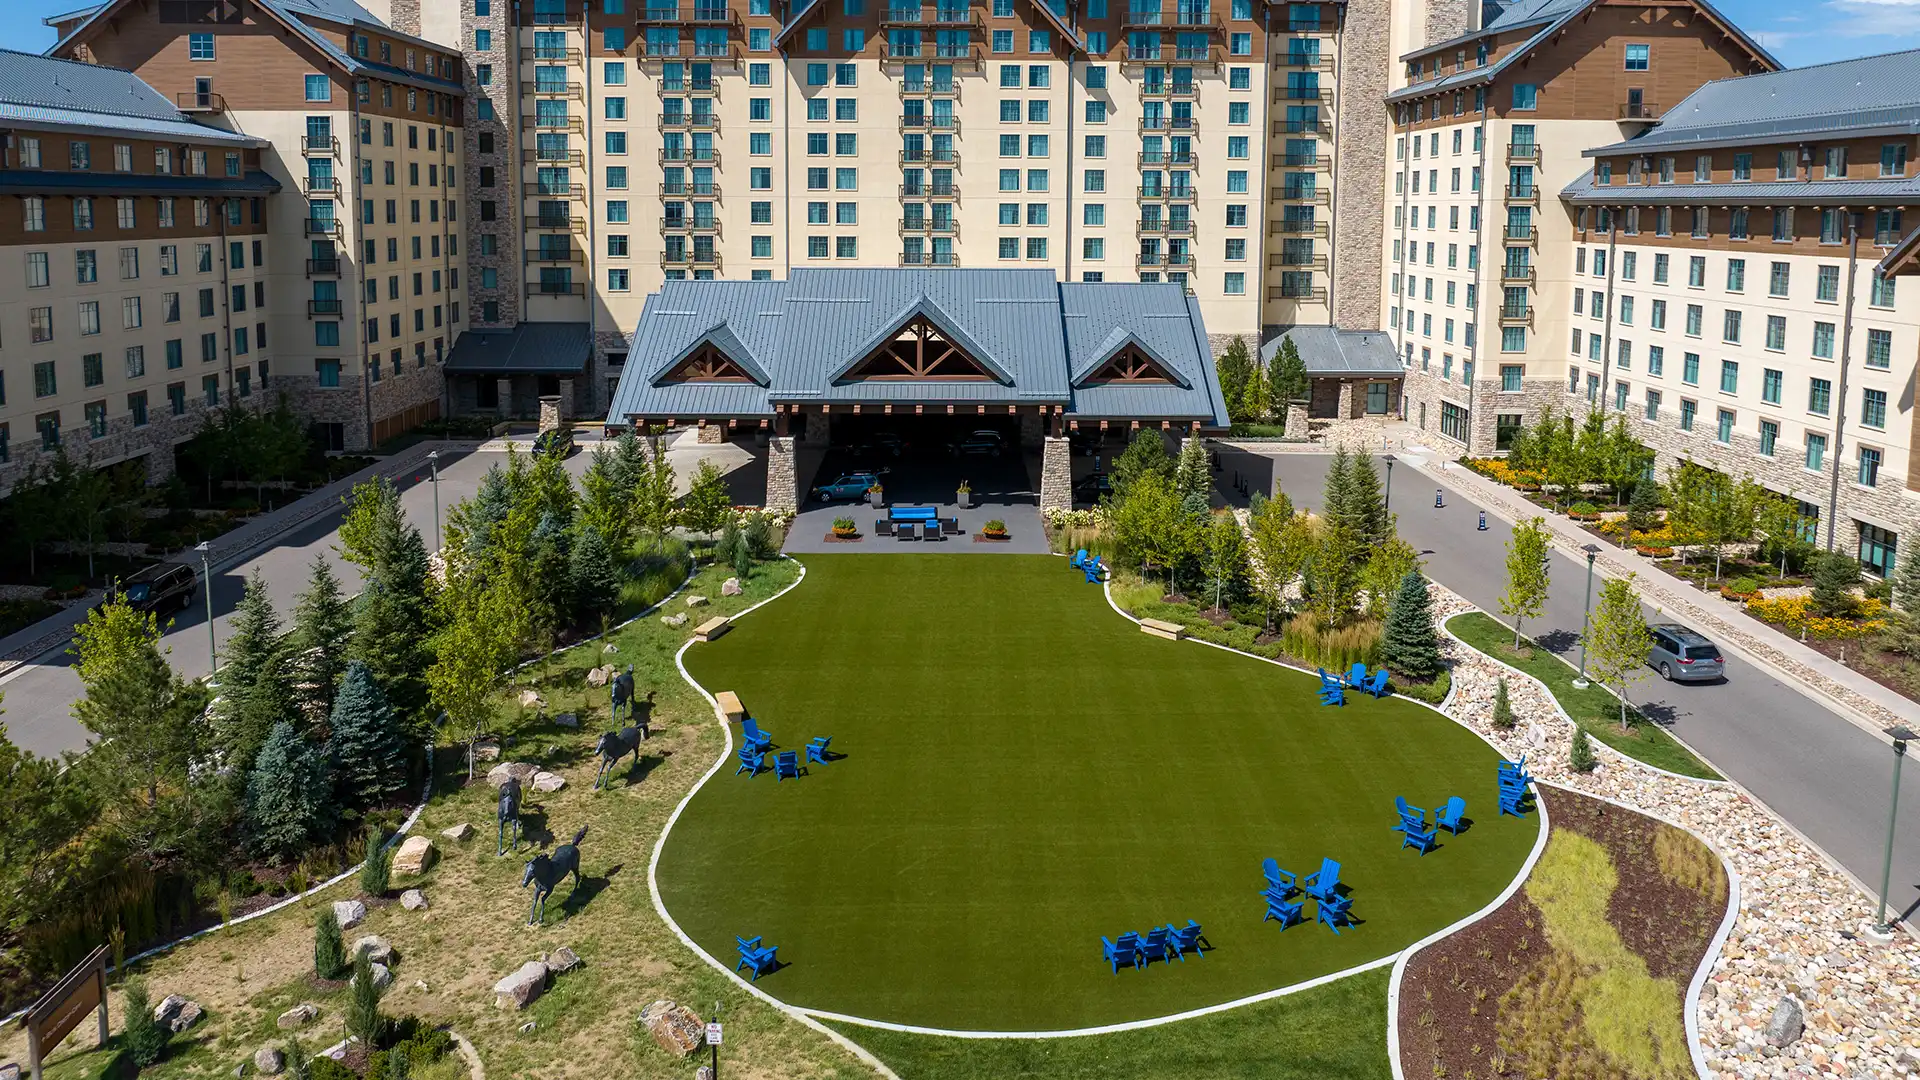 Denver Area Alpine Resort oferece aos hóspedes espaços ao ar livre luxuosos